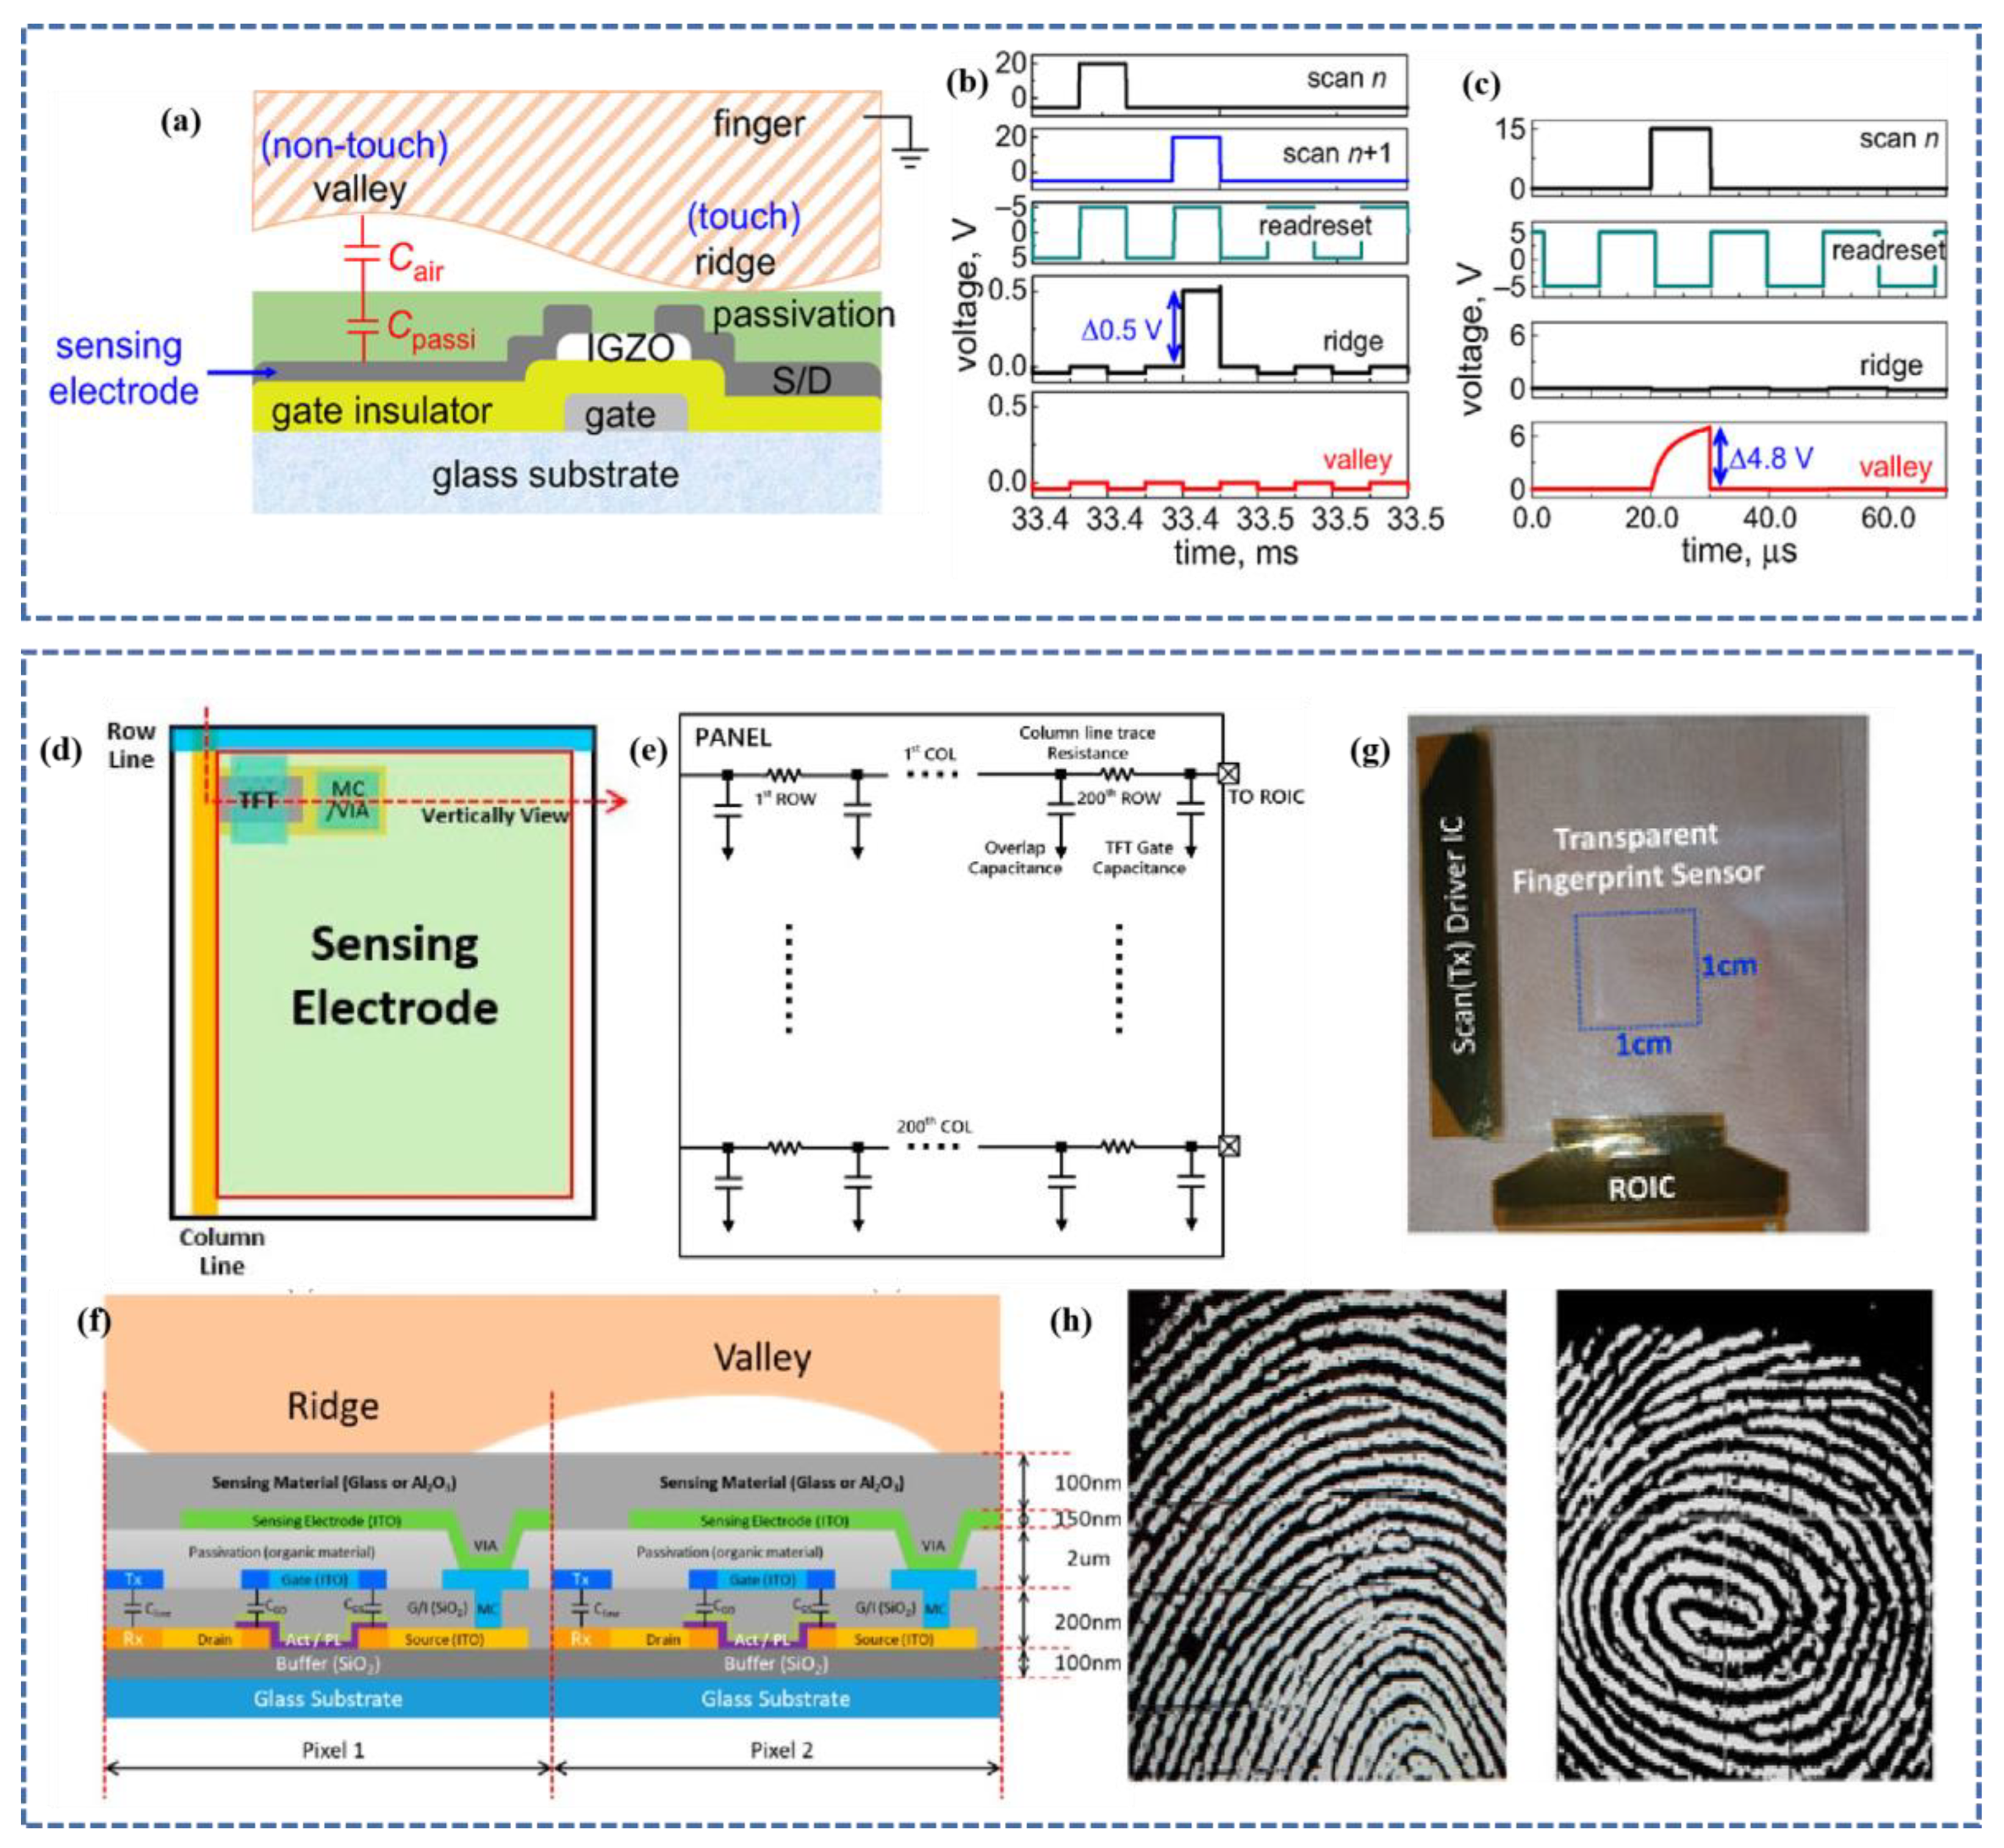 In-sensor reservoir computing system for latent fingerprint